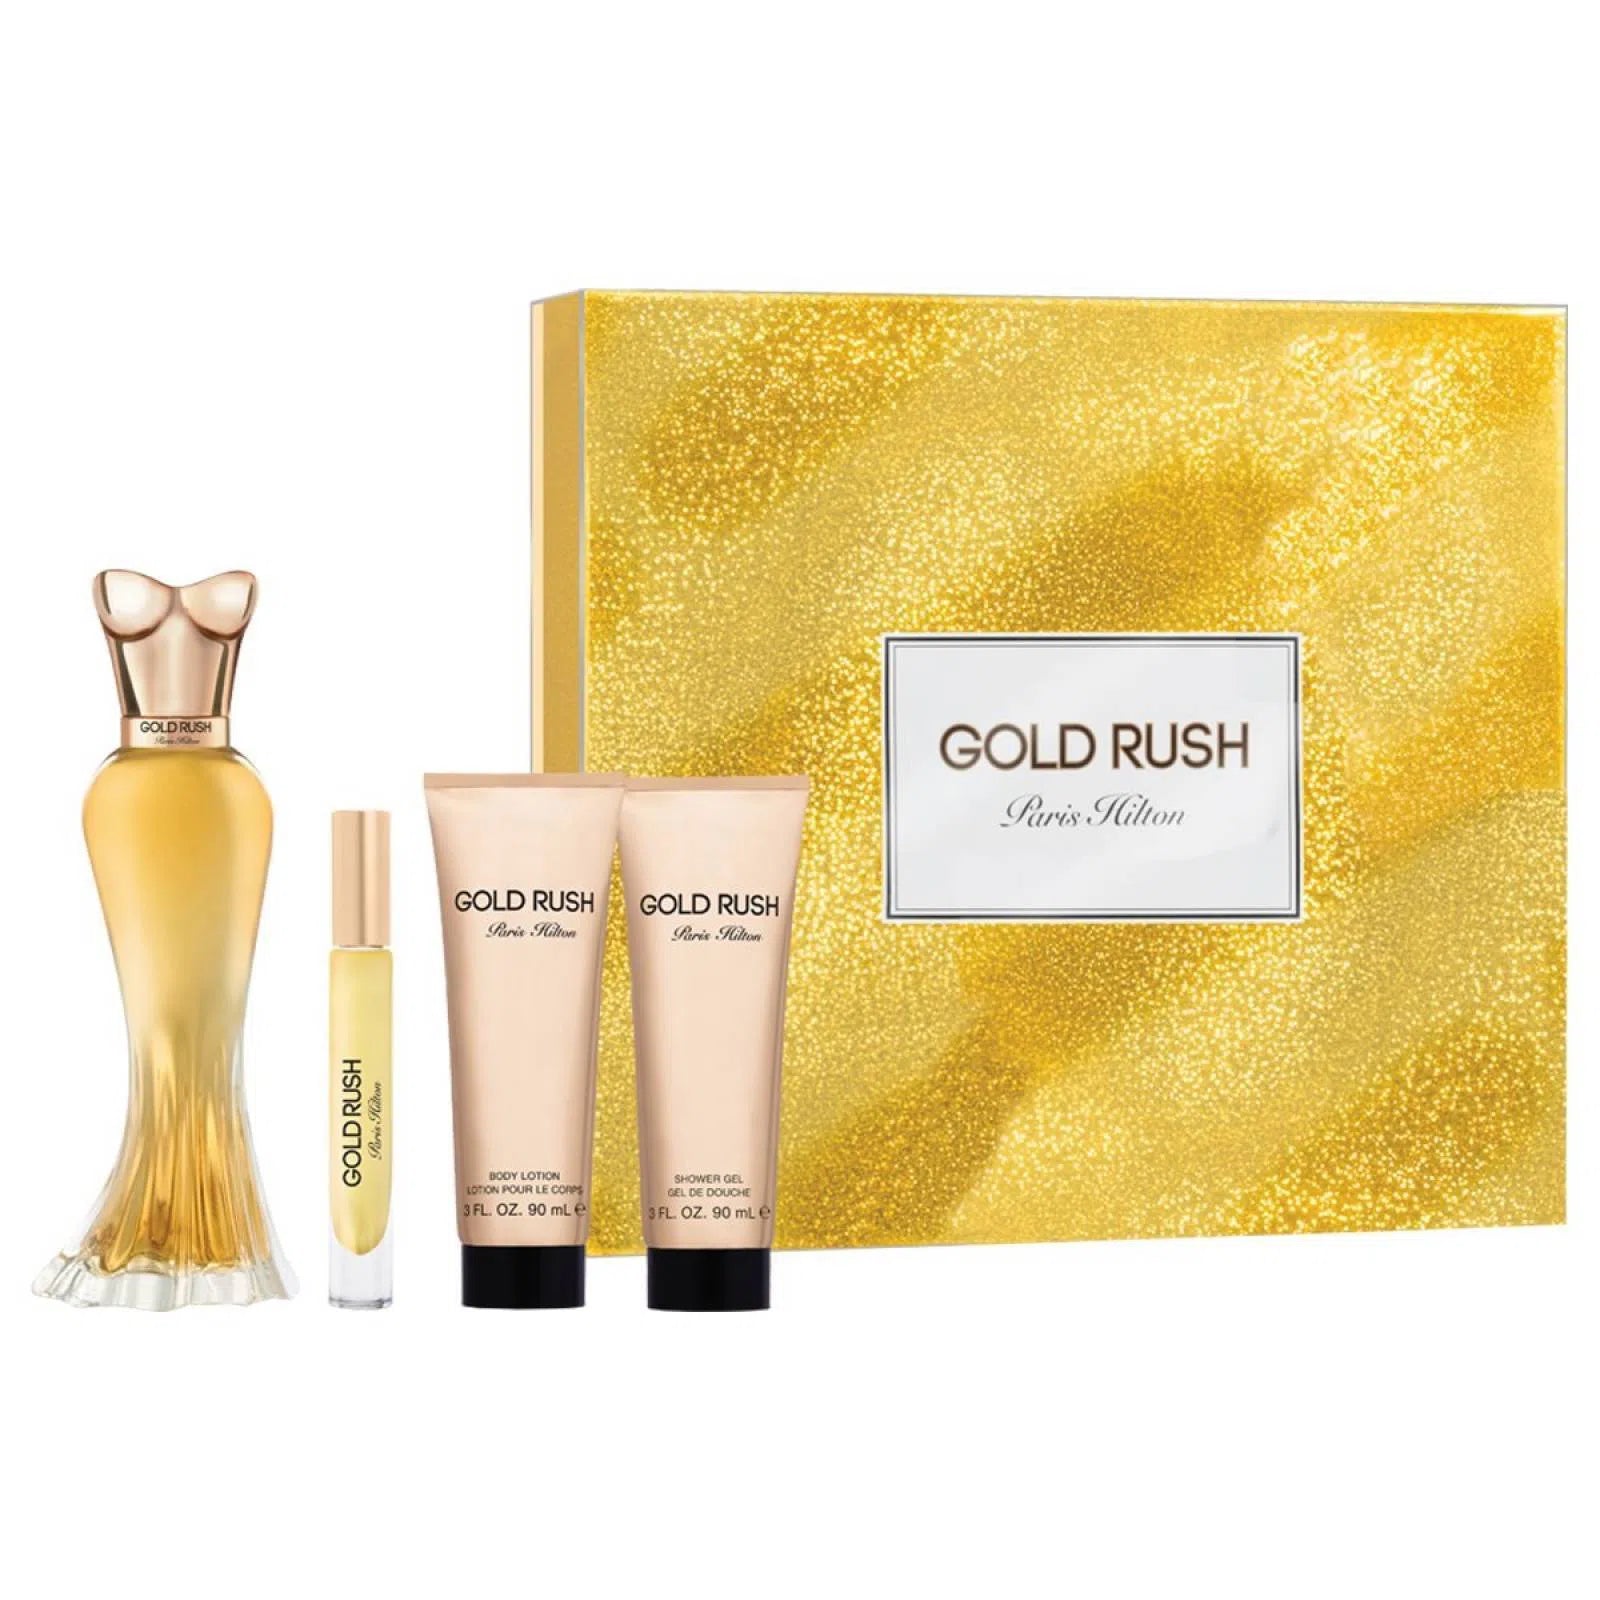 Estuche Paris Hilton Gold Rush EDP (W) / 4 Pc SP 100 ml; BL 90 ml; SG 90 ml; Mini - 608940583623- Prive Perfumes Honduras